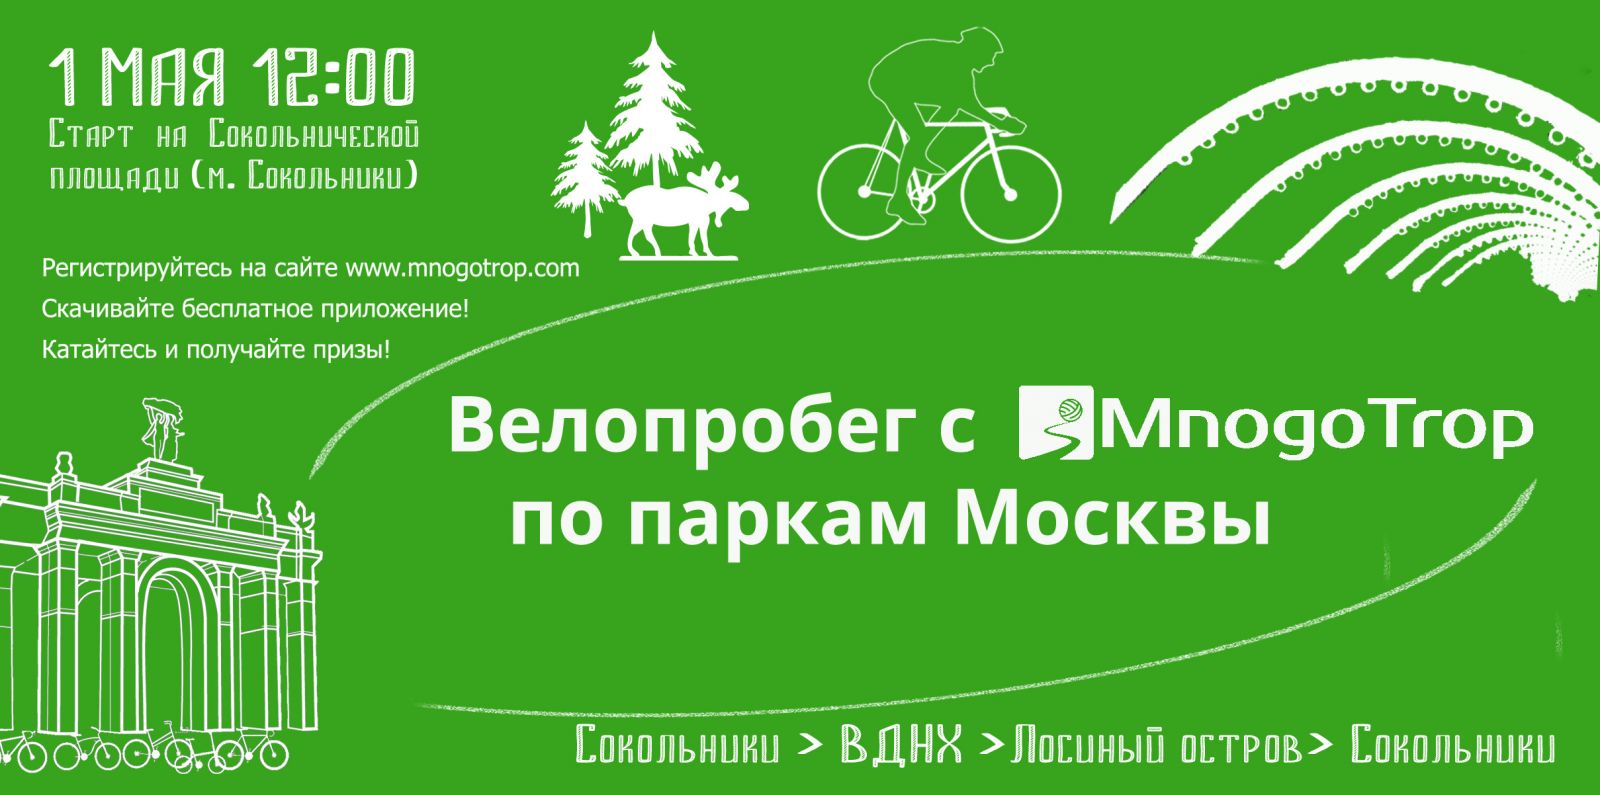 Велопробег с MnogoTrop по паркам Москвы 1 мая 2016